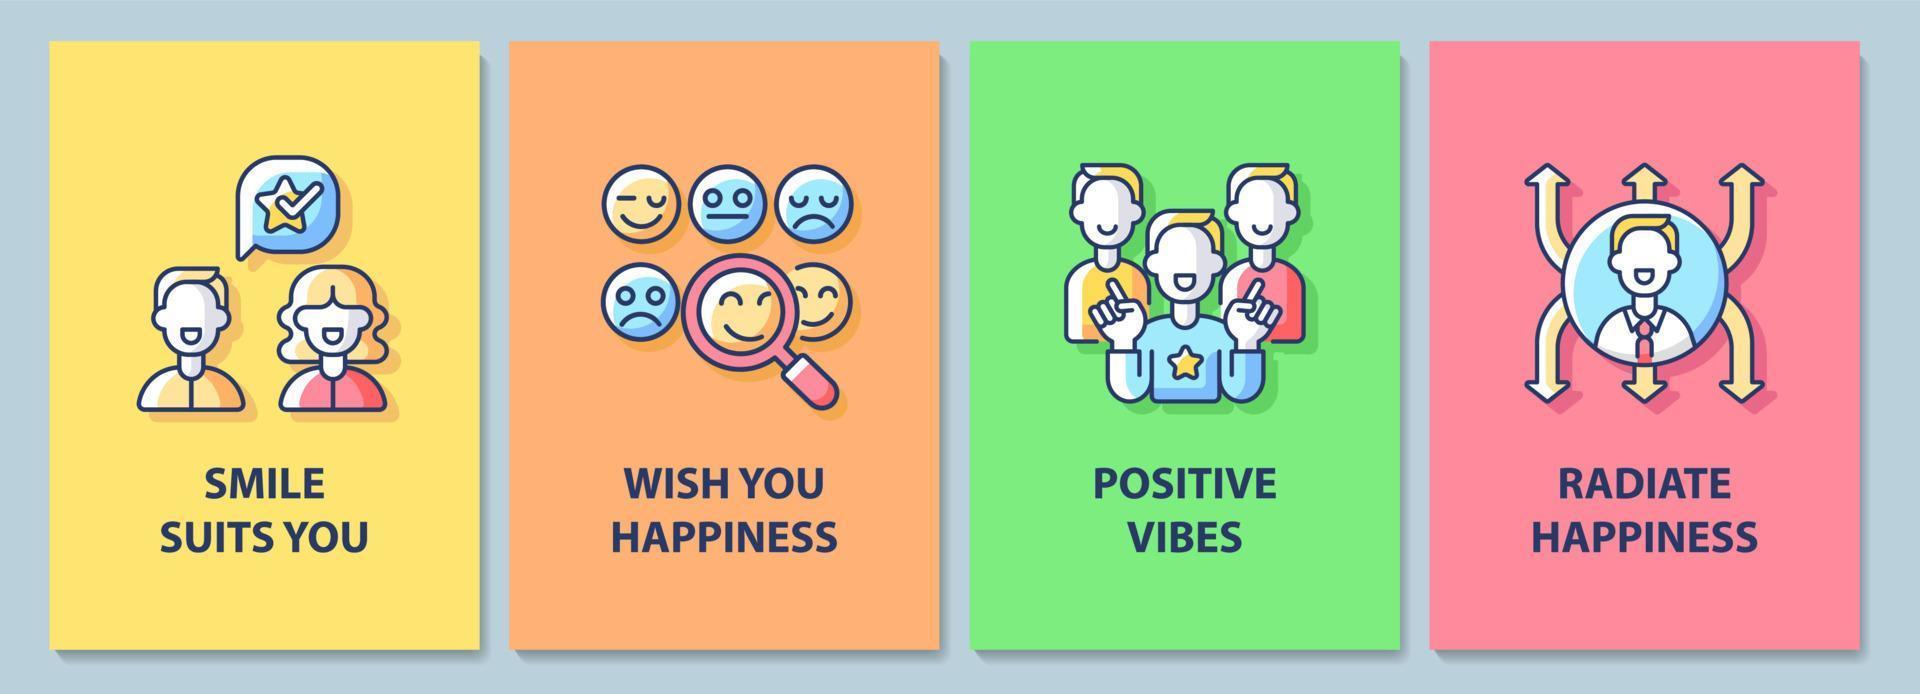 gelukkige en positieve berichten wenskaart met kleur icon element set. briefkaart vector ontwerp. decoratieve flyer met creatieve illustratie. notitiekaart met felicitatieberichtpakket